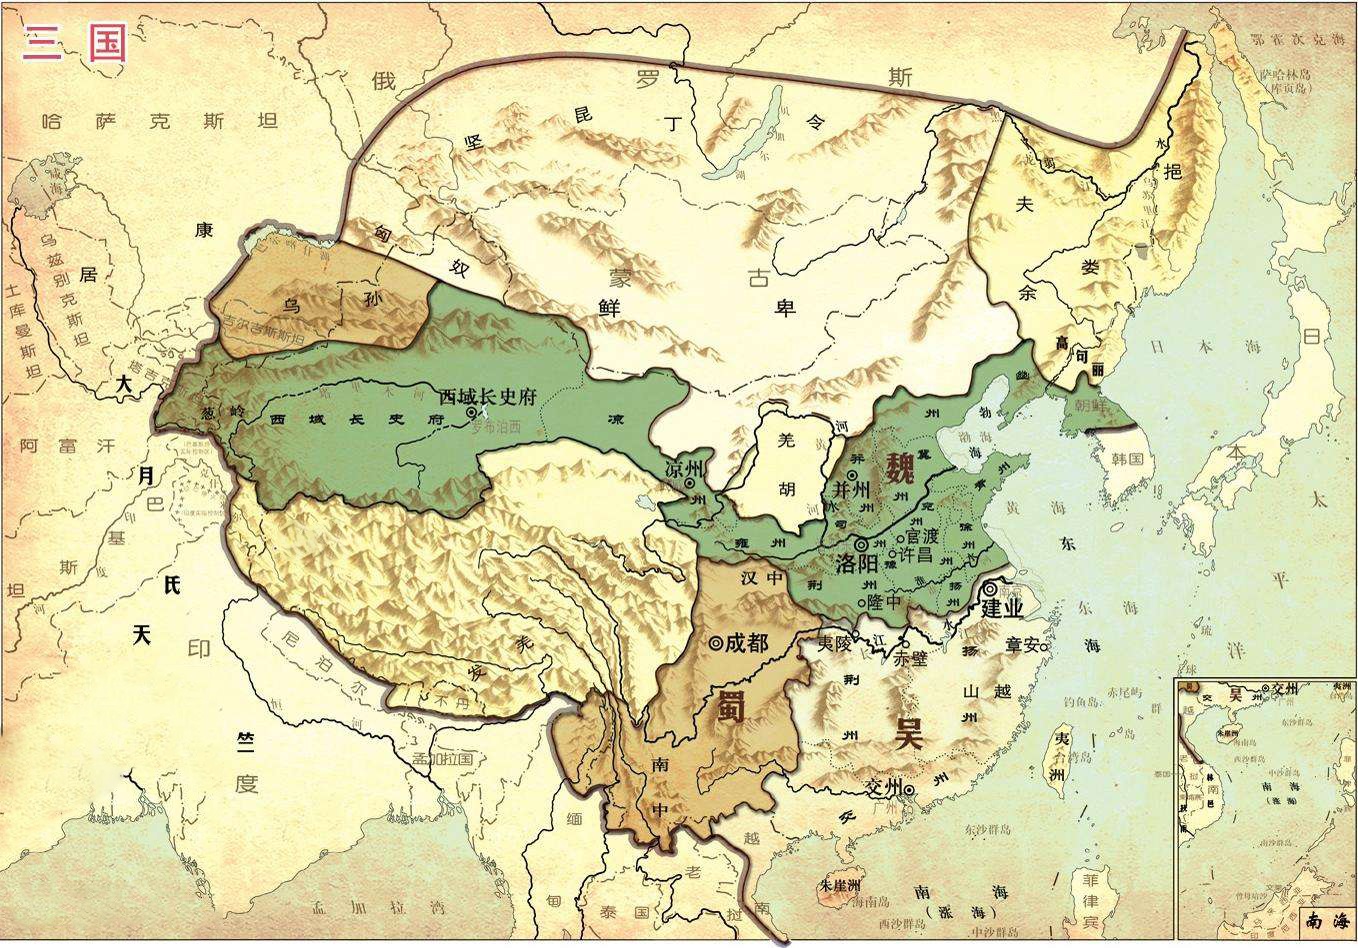 曹魏占据了天下大半地盘，为什么蜀汉与东吴还能与它并存这么久